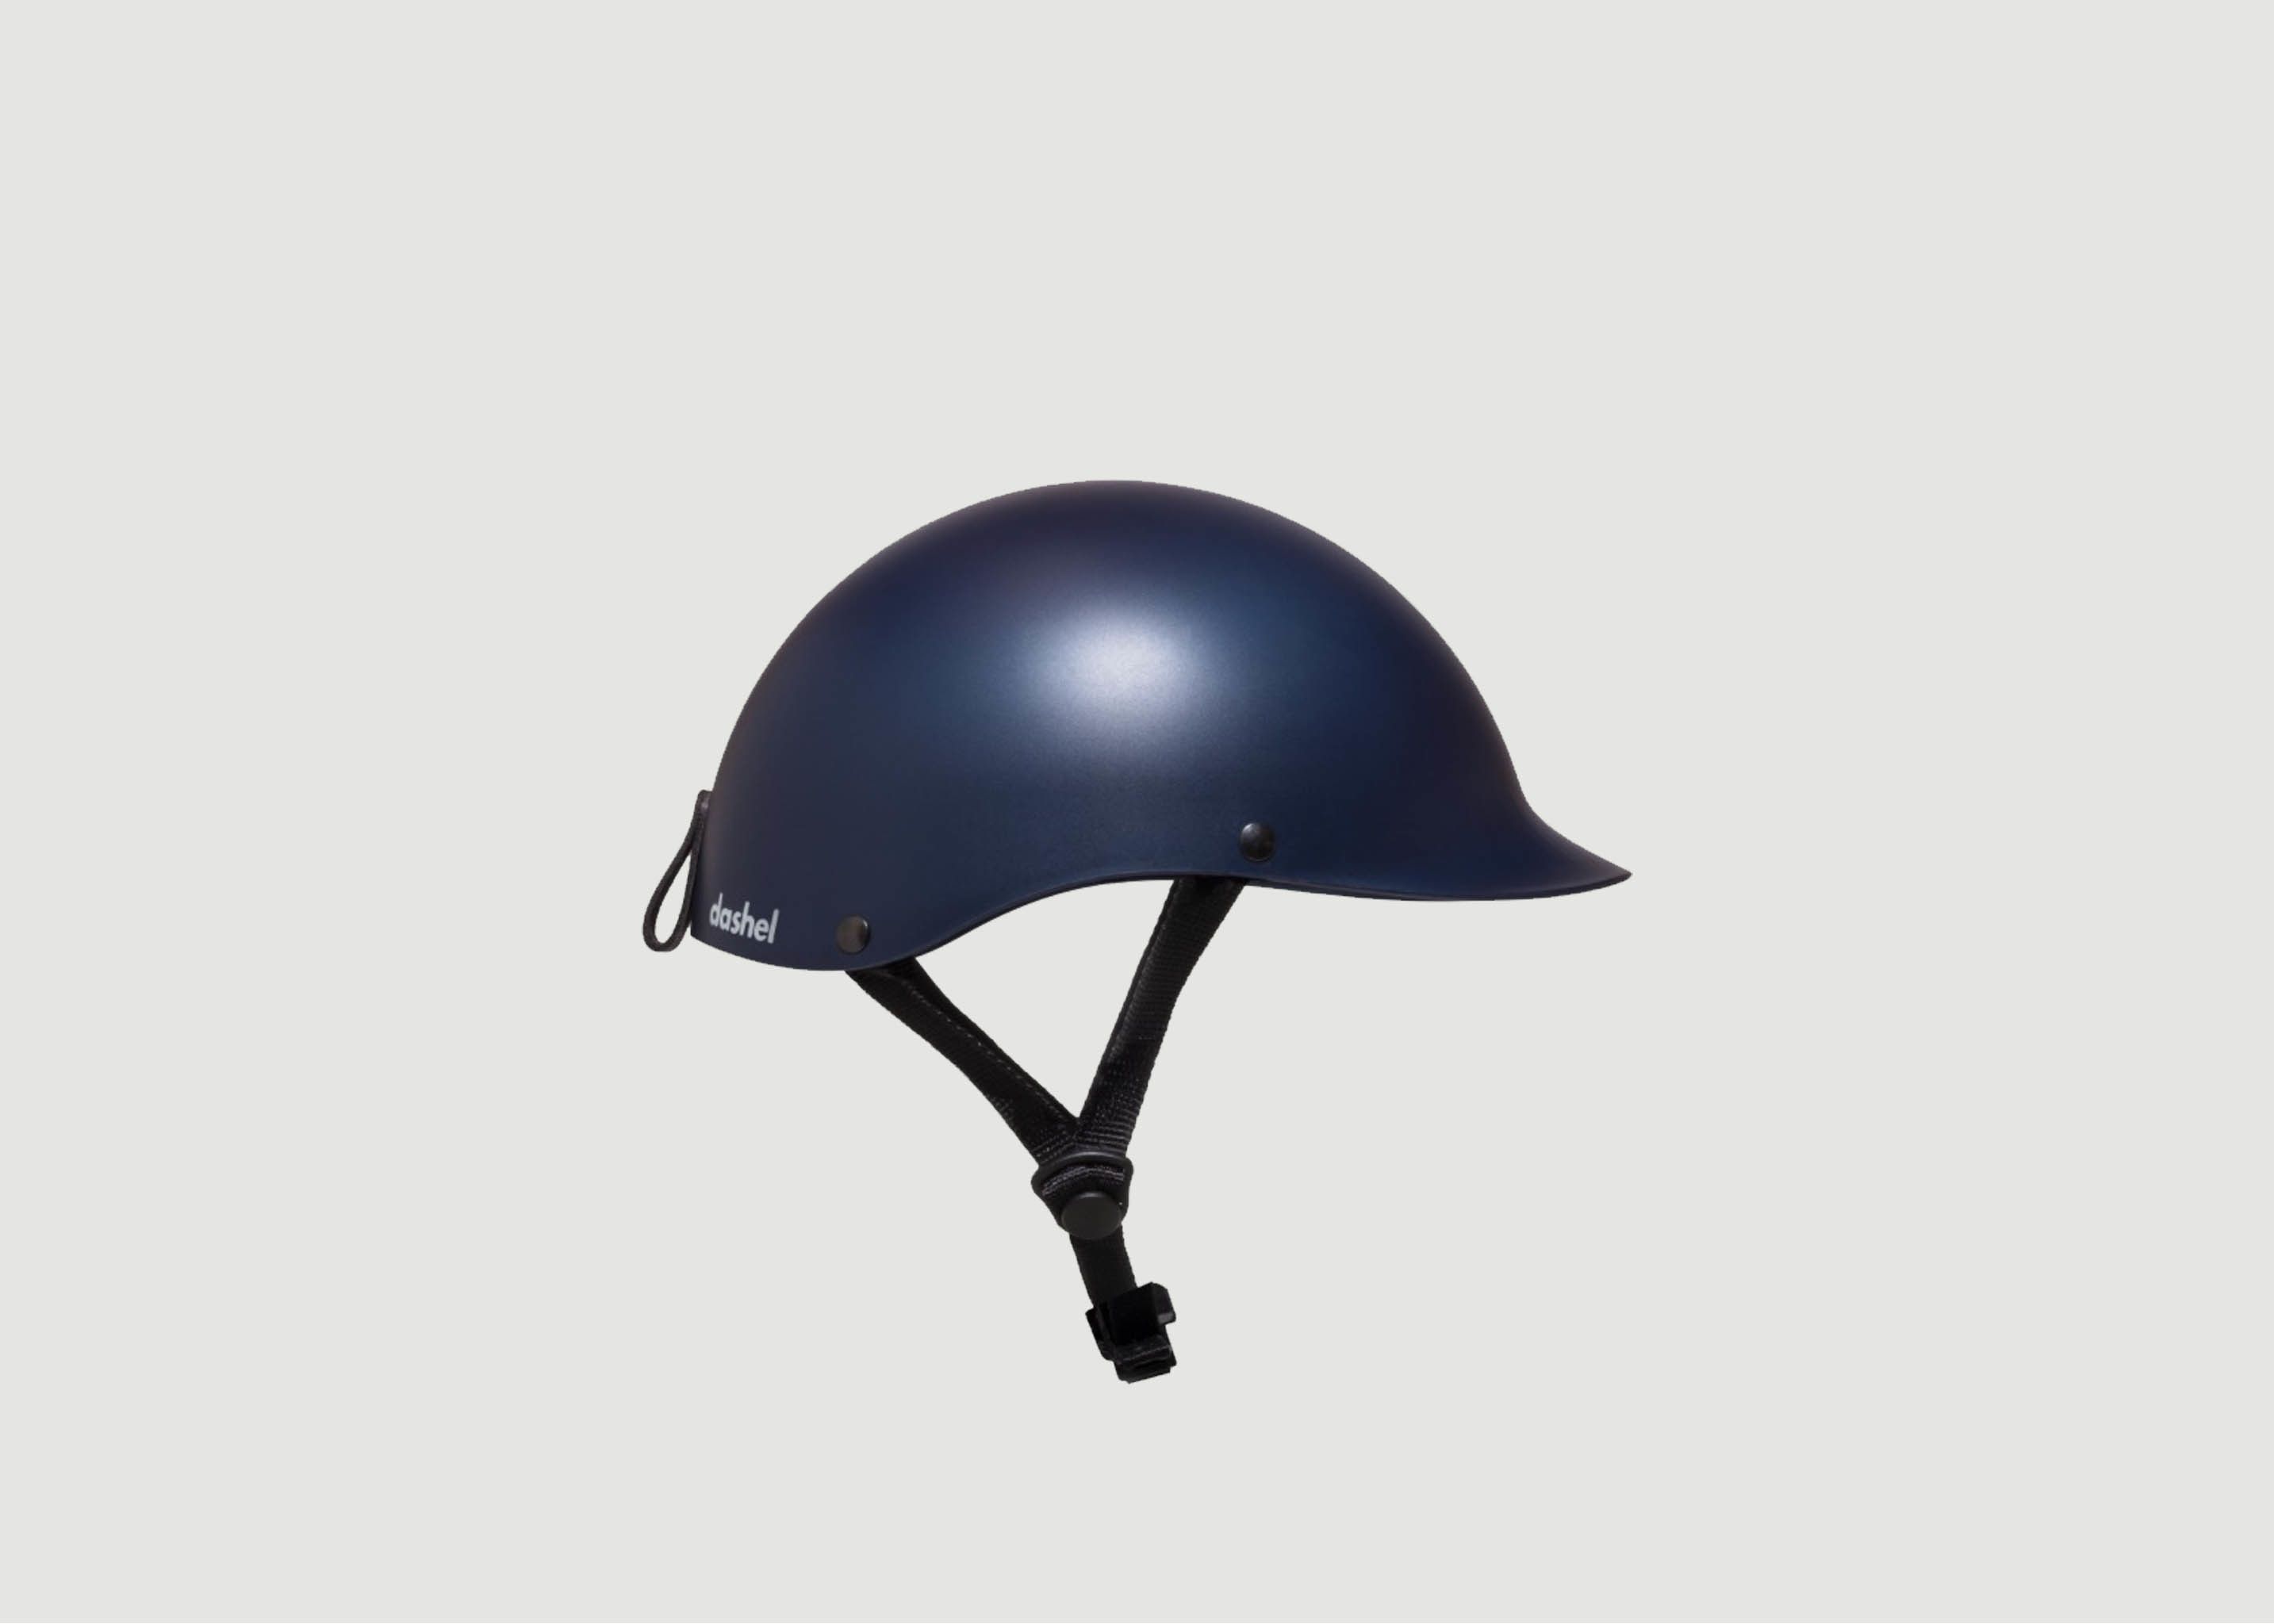 Helm Cycle - Dashel